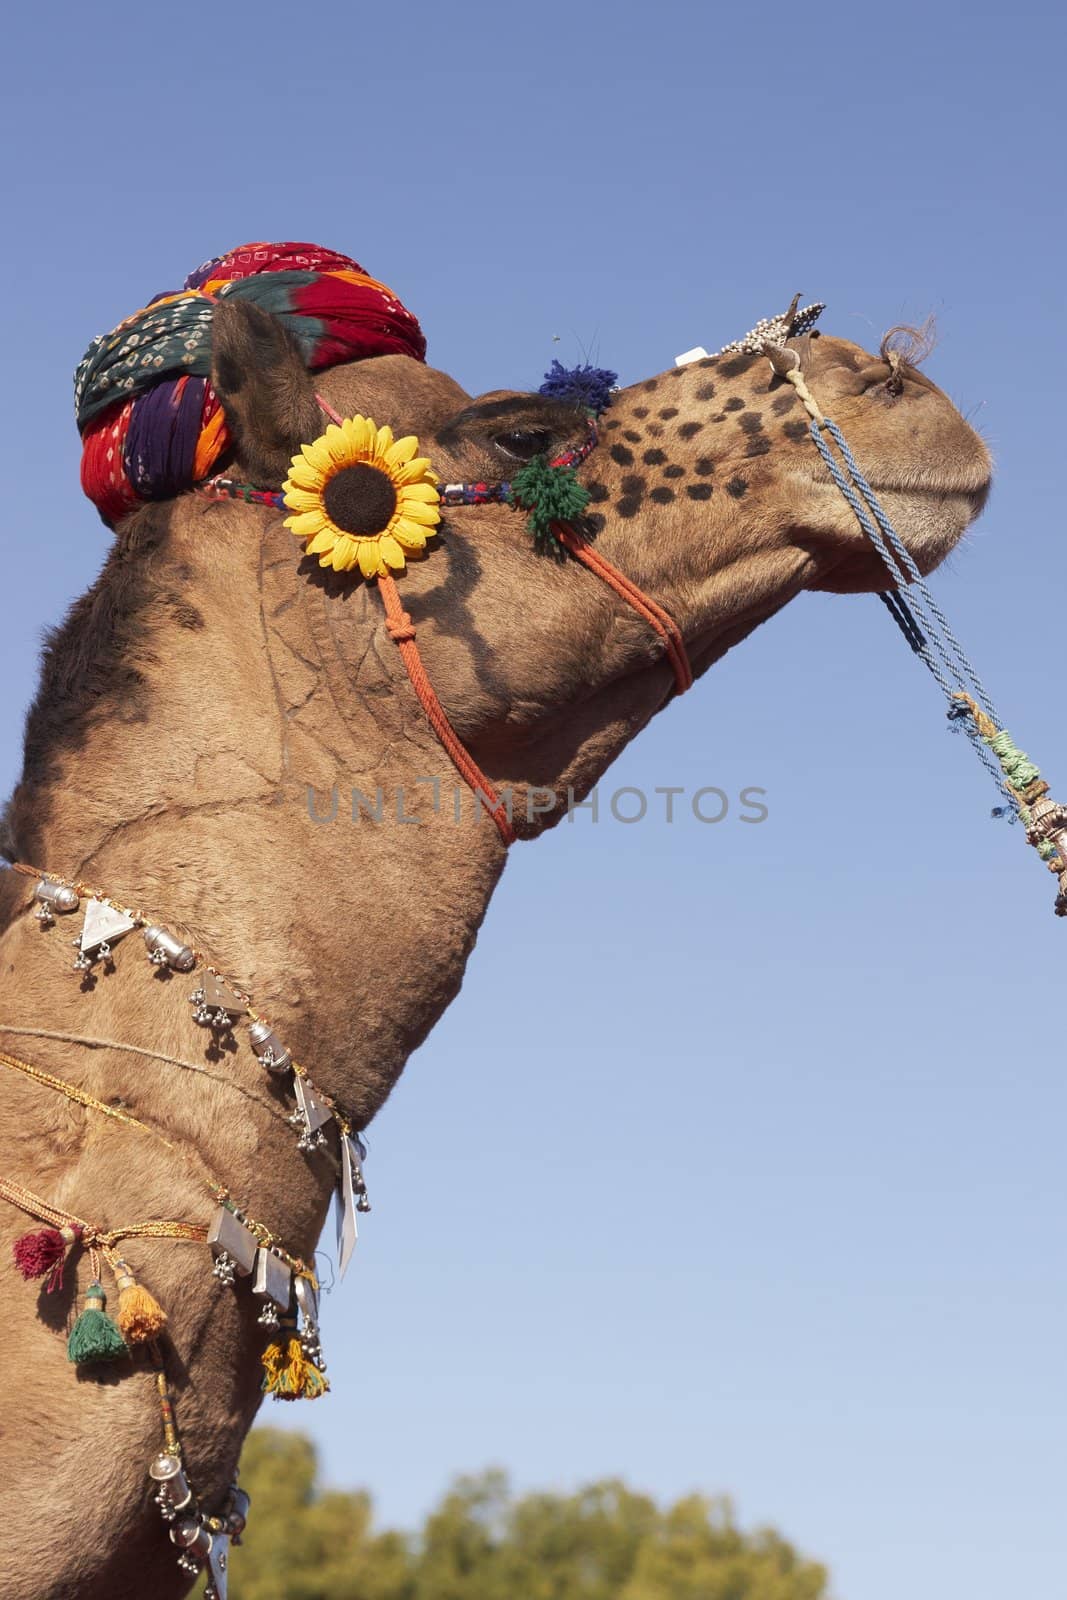 Camel Wearing a Turban by JeremyRichards